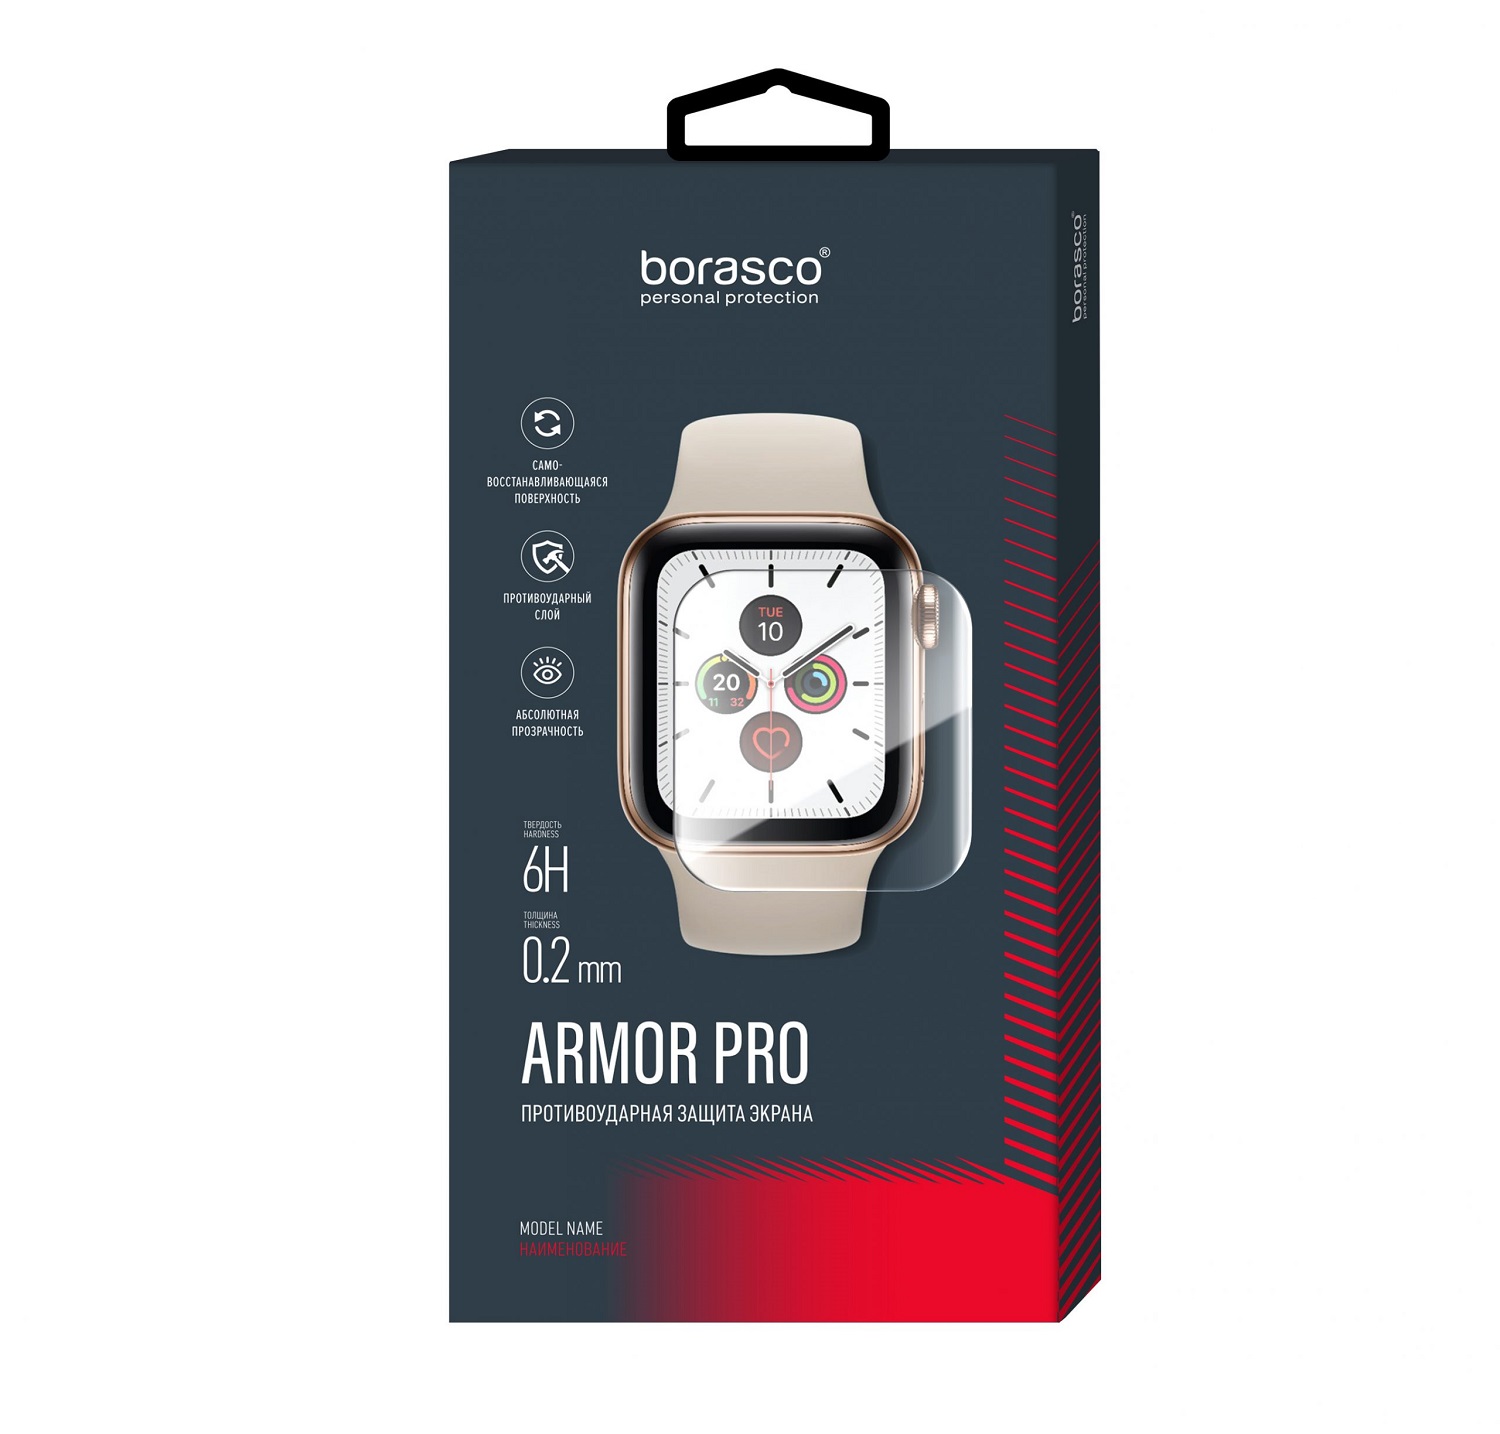 Защита экрана BoraSCO Armor Pro для Huawei Watch fit защита экрана borasco armor pro для honor x10